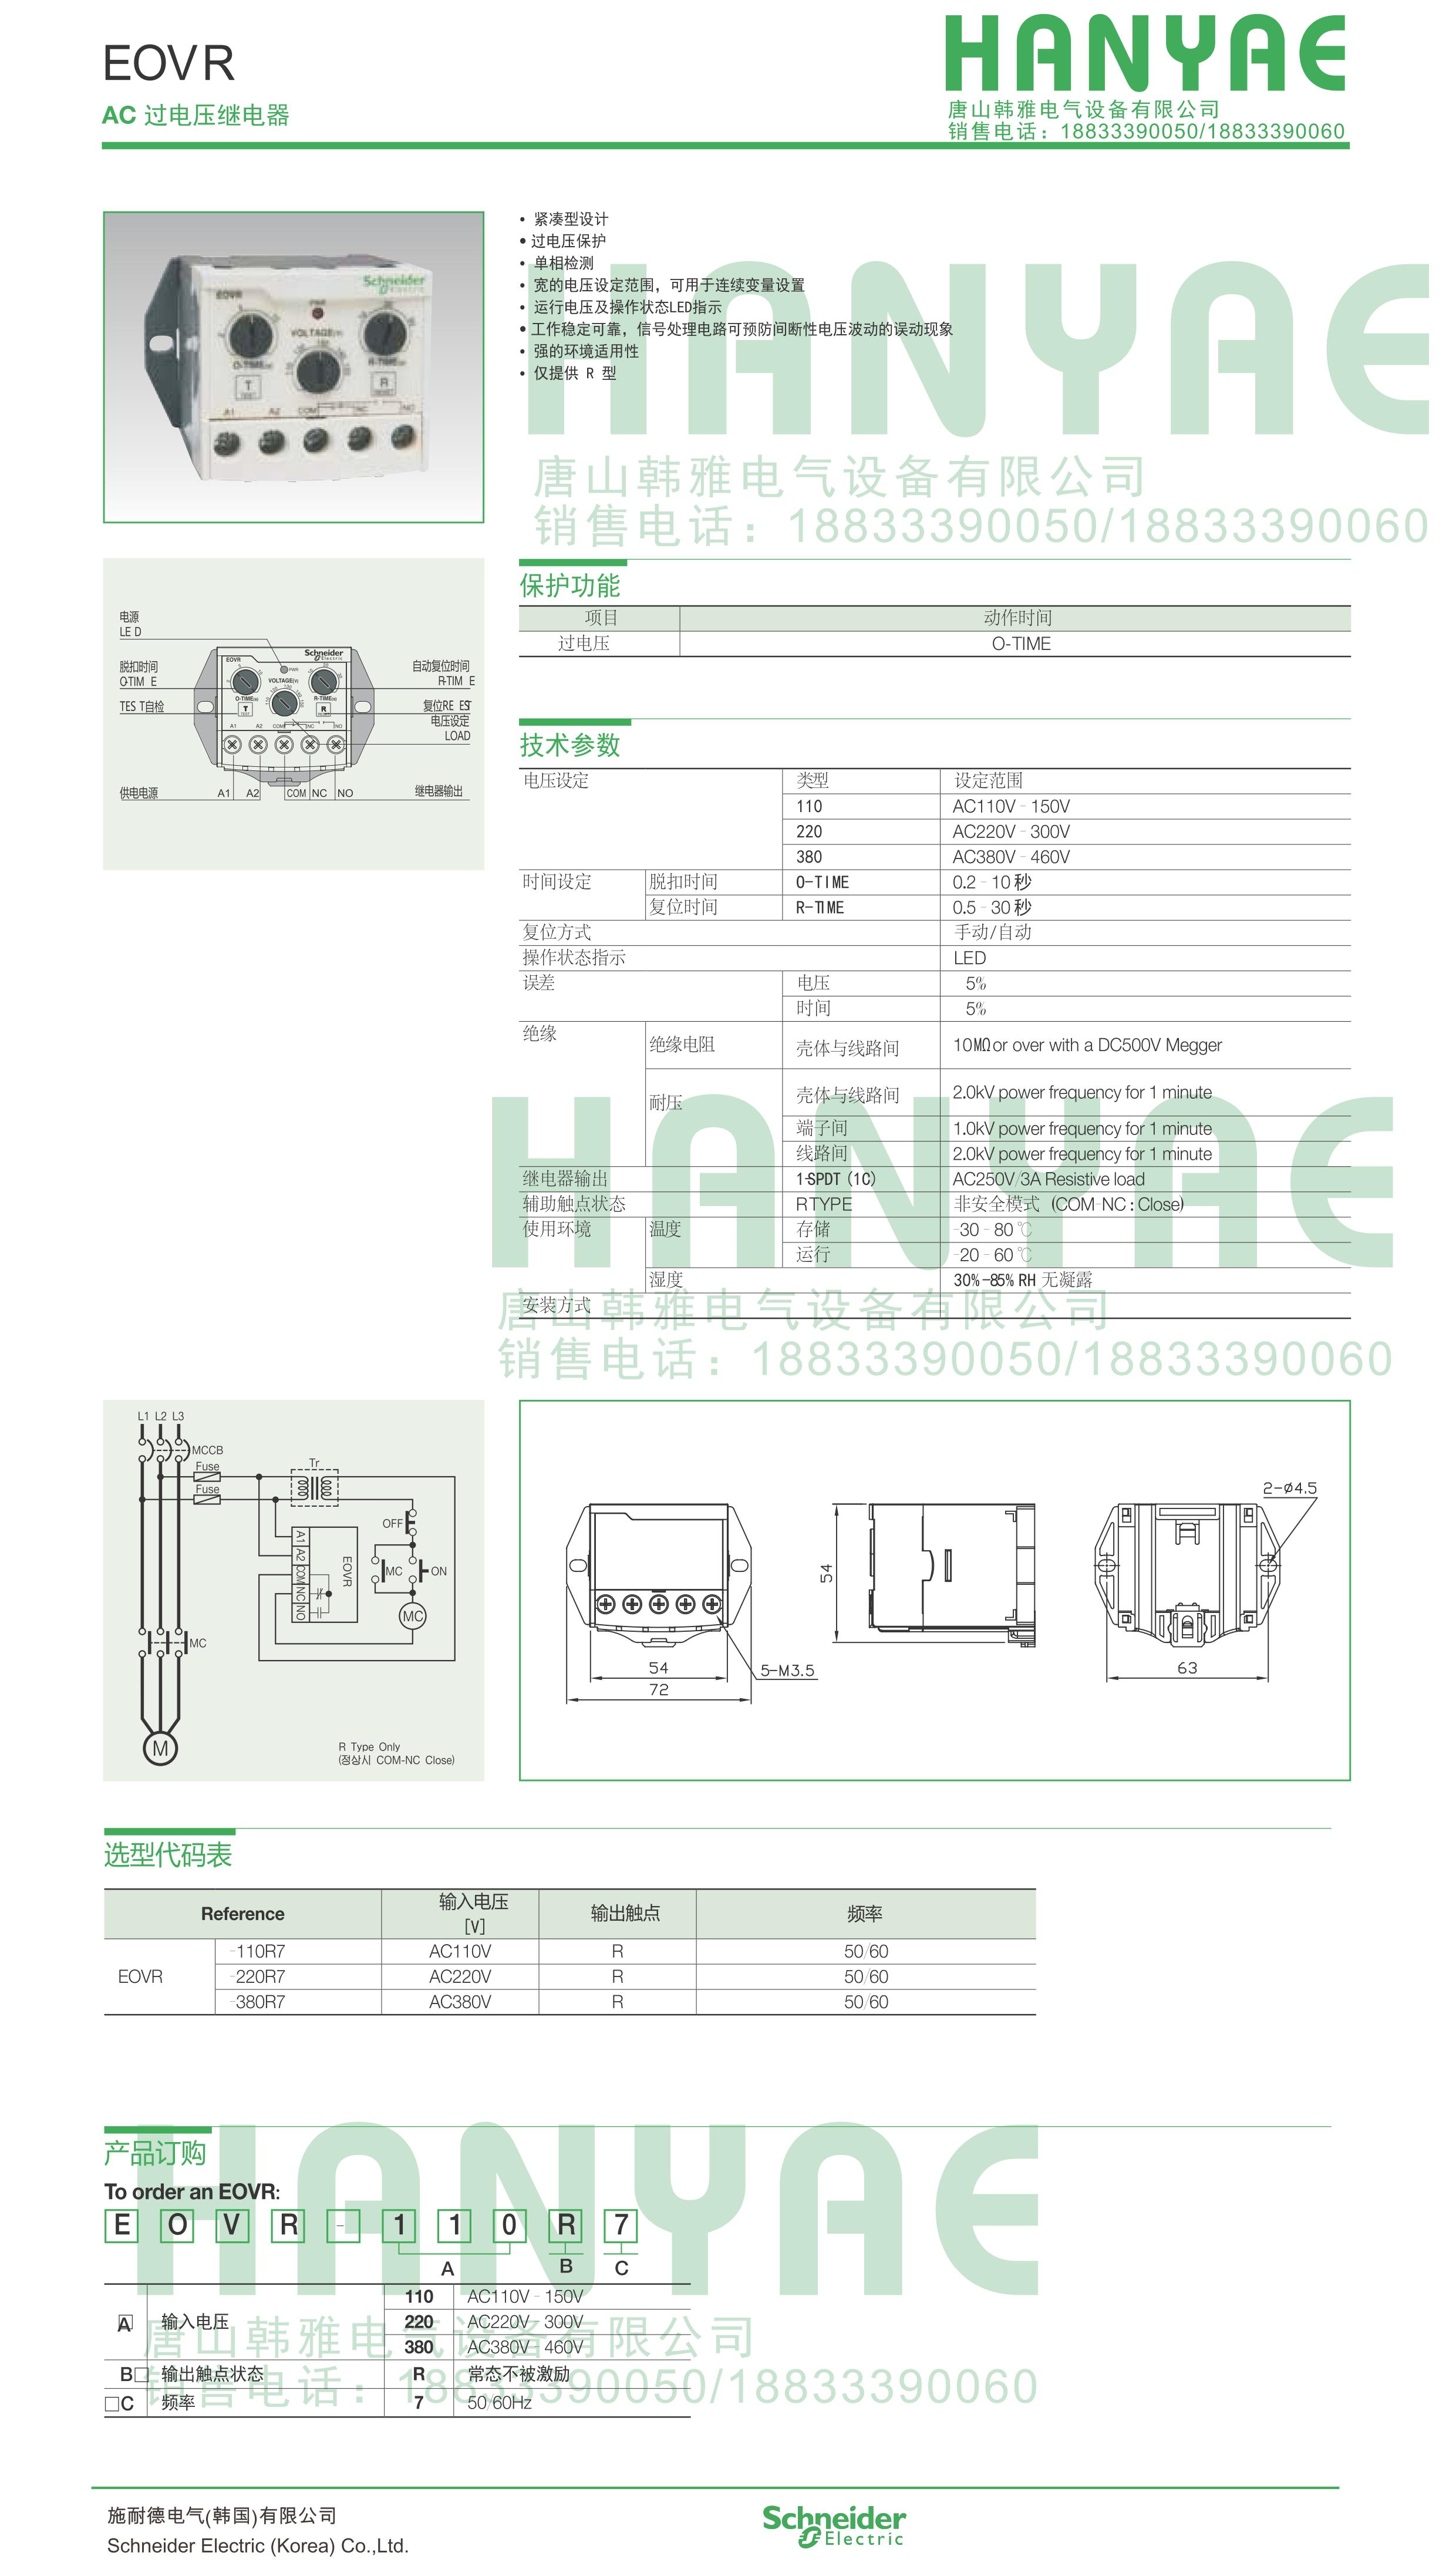 施耐德EOCR(原韩国三和)-电压保护器EOVR-220R7 施耐德EOCR,电压保护器,马达保护器,电动机保护器,韩国三和SAMWHA